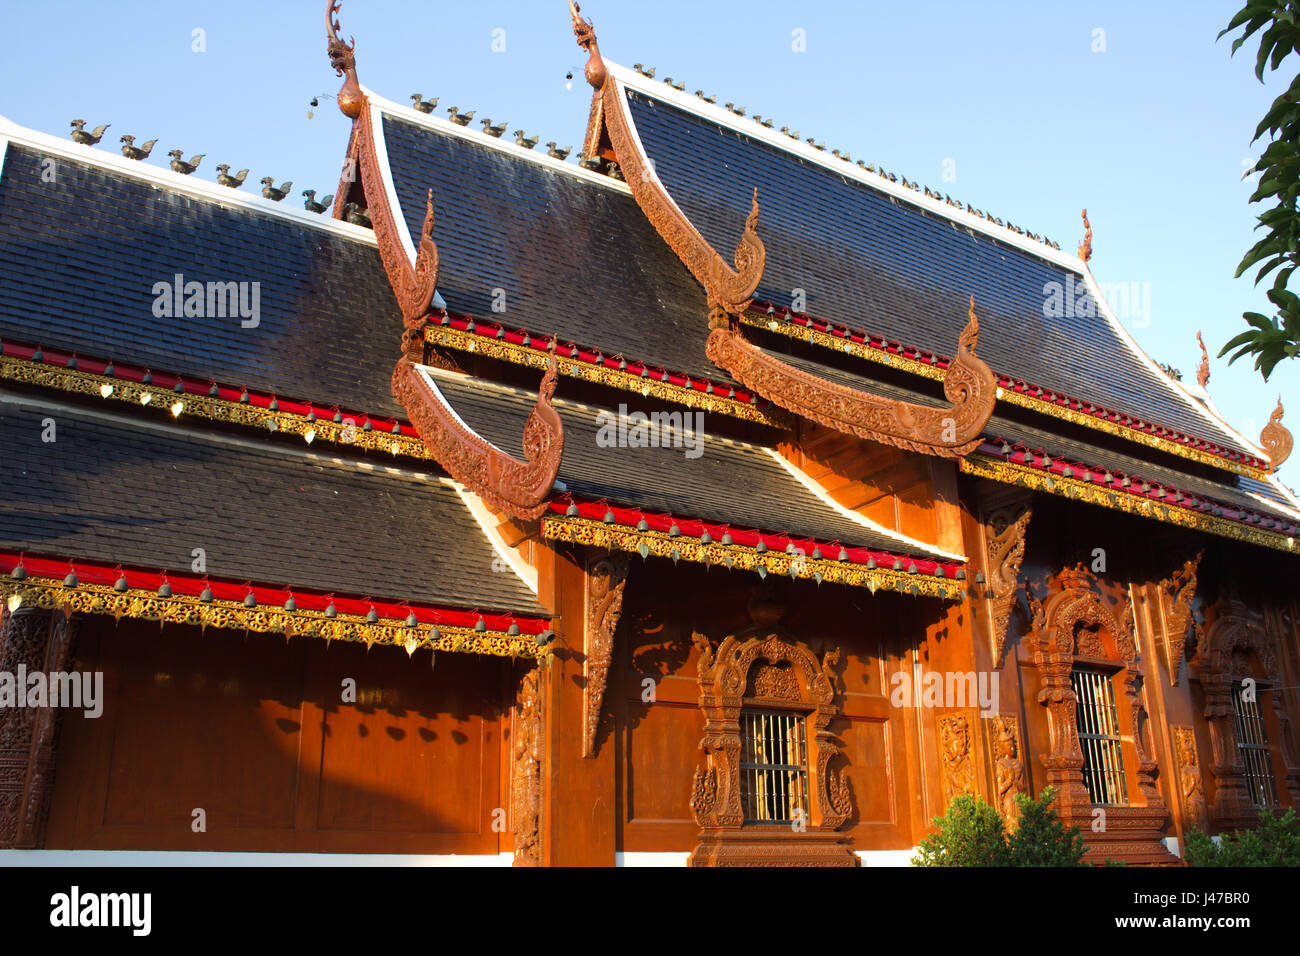 Seitenansicht des herrlichen Lanna-Stil Teakholz Viharn (Predigt Hall) in die buddhistische Tempelanlage Wat Ban Höhle, Mae Taeng, Chiang Mai, Thailand Stockfoto